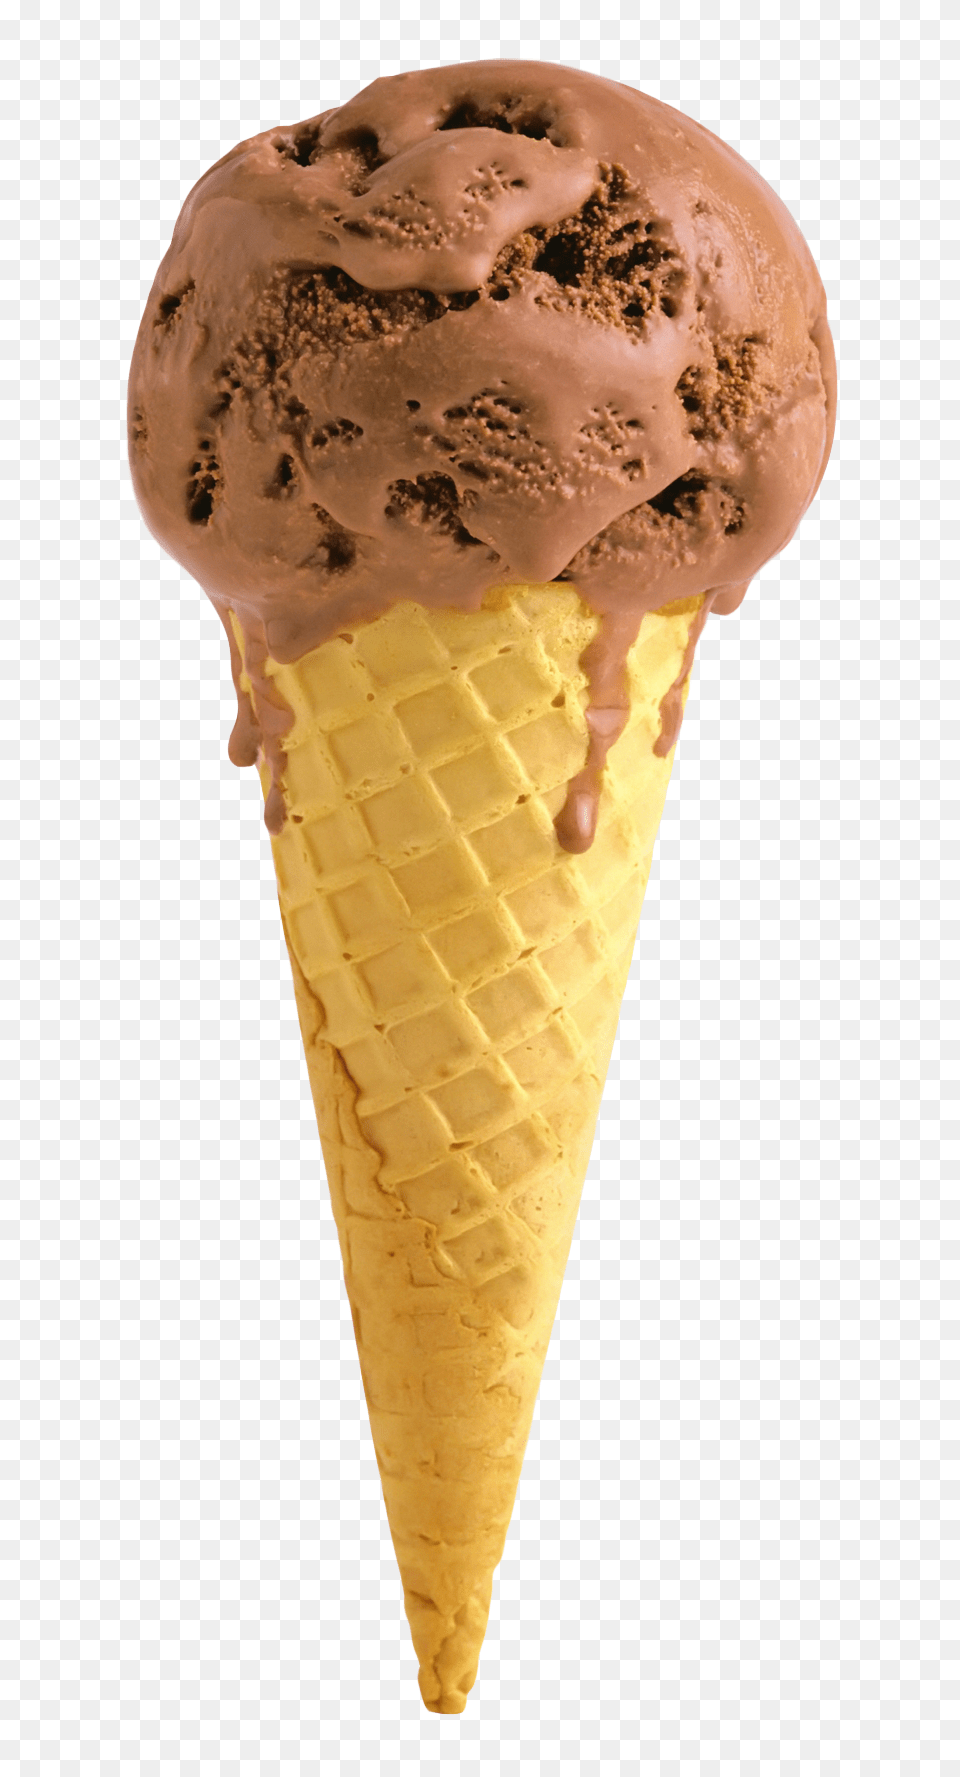 Pngpix Com Ice Cream Cone Transparent Image, Dessert, Food, Ice Cream, Soft Serve Ice Cream Free Png